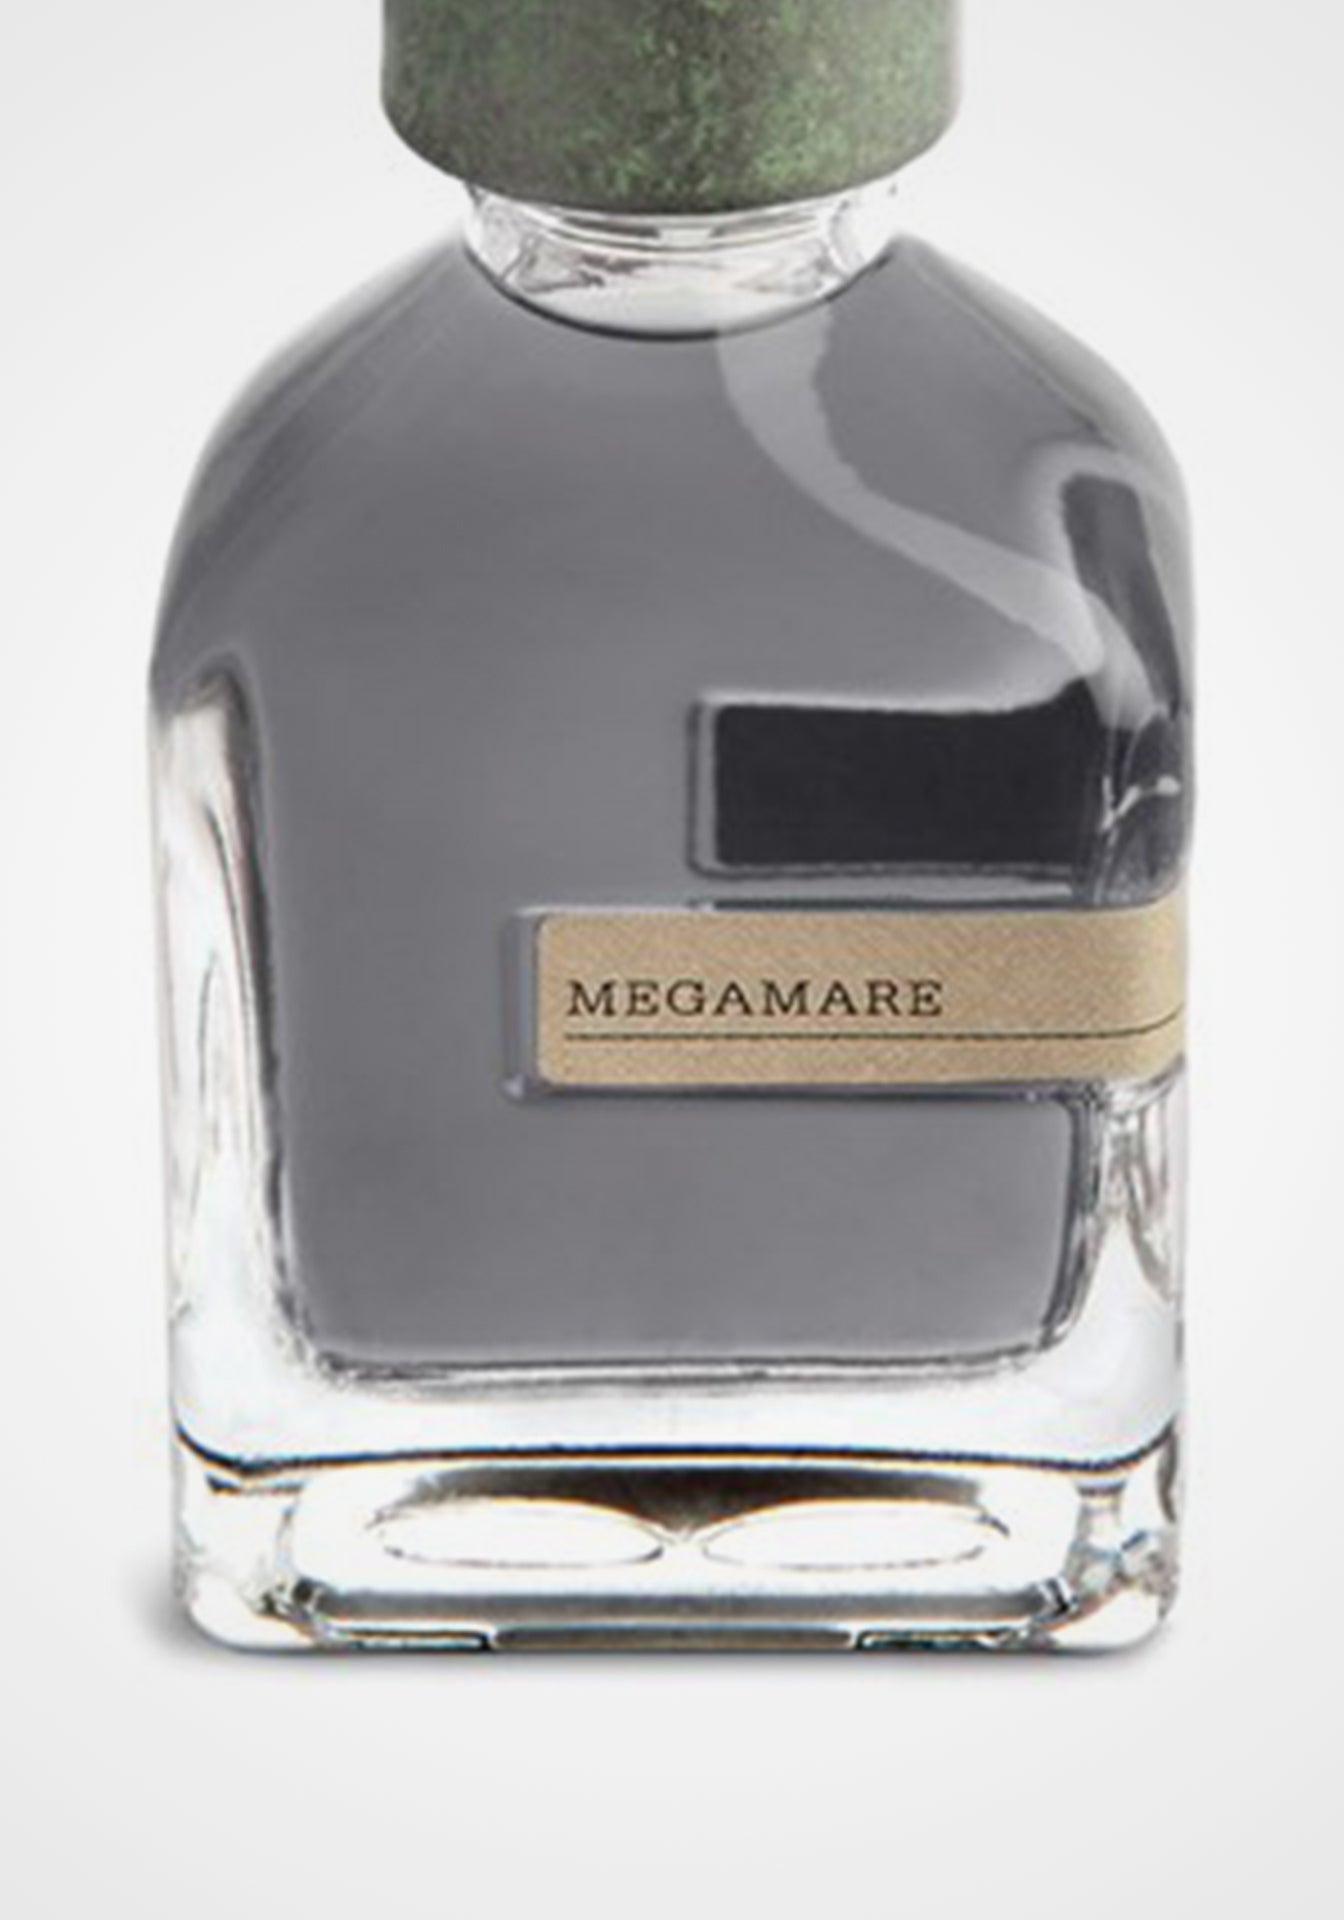 Megamare Parfum, 50ml